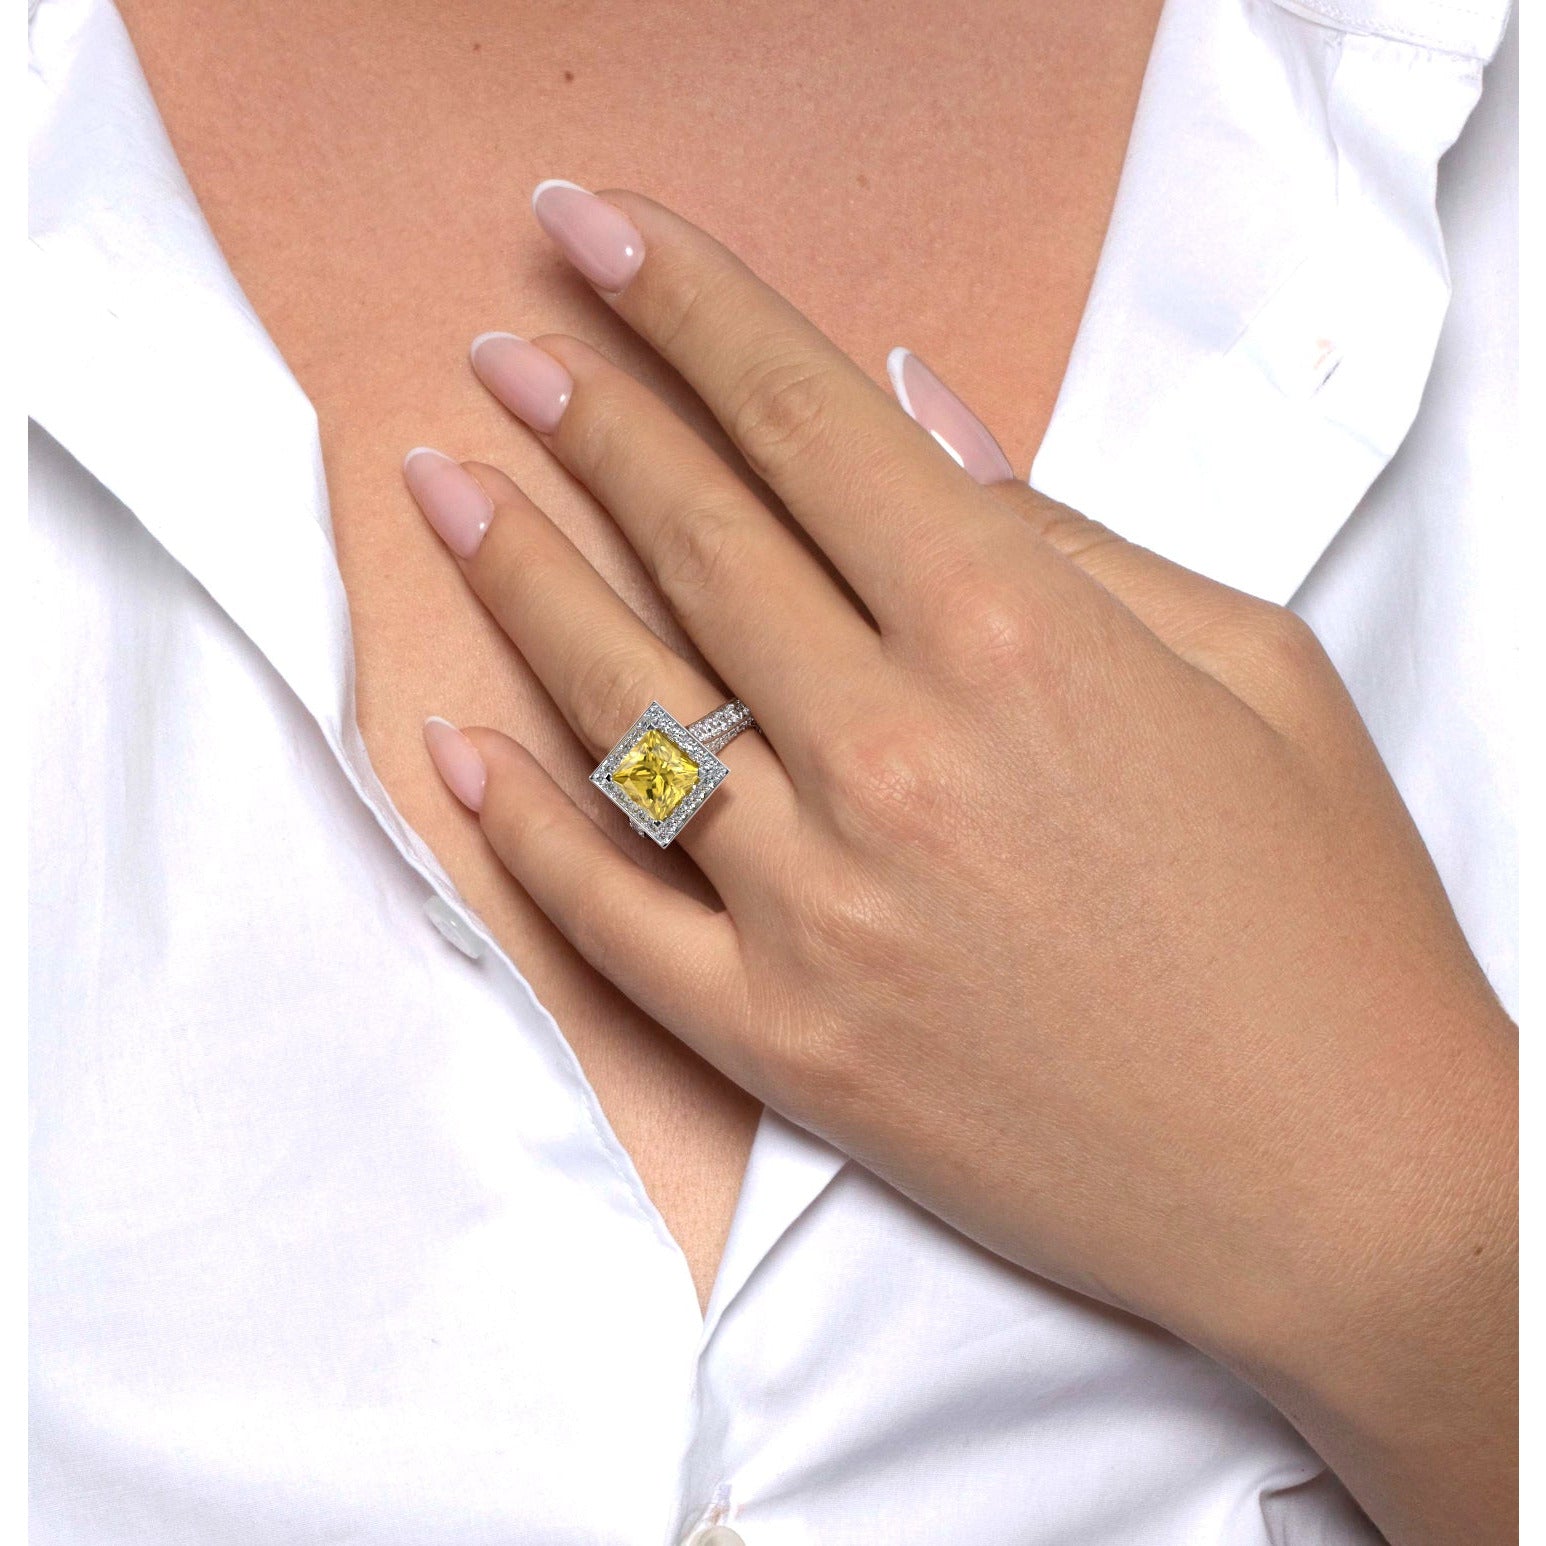 Freya Diamond Engagement Ring   (4.5 Carat) -18K White Gold